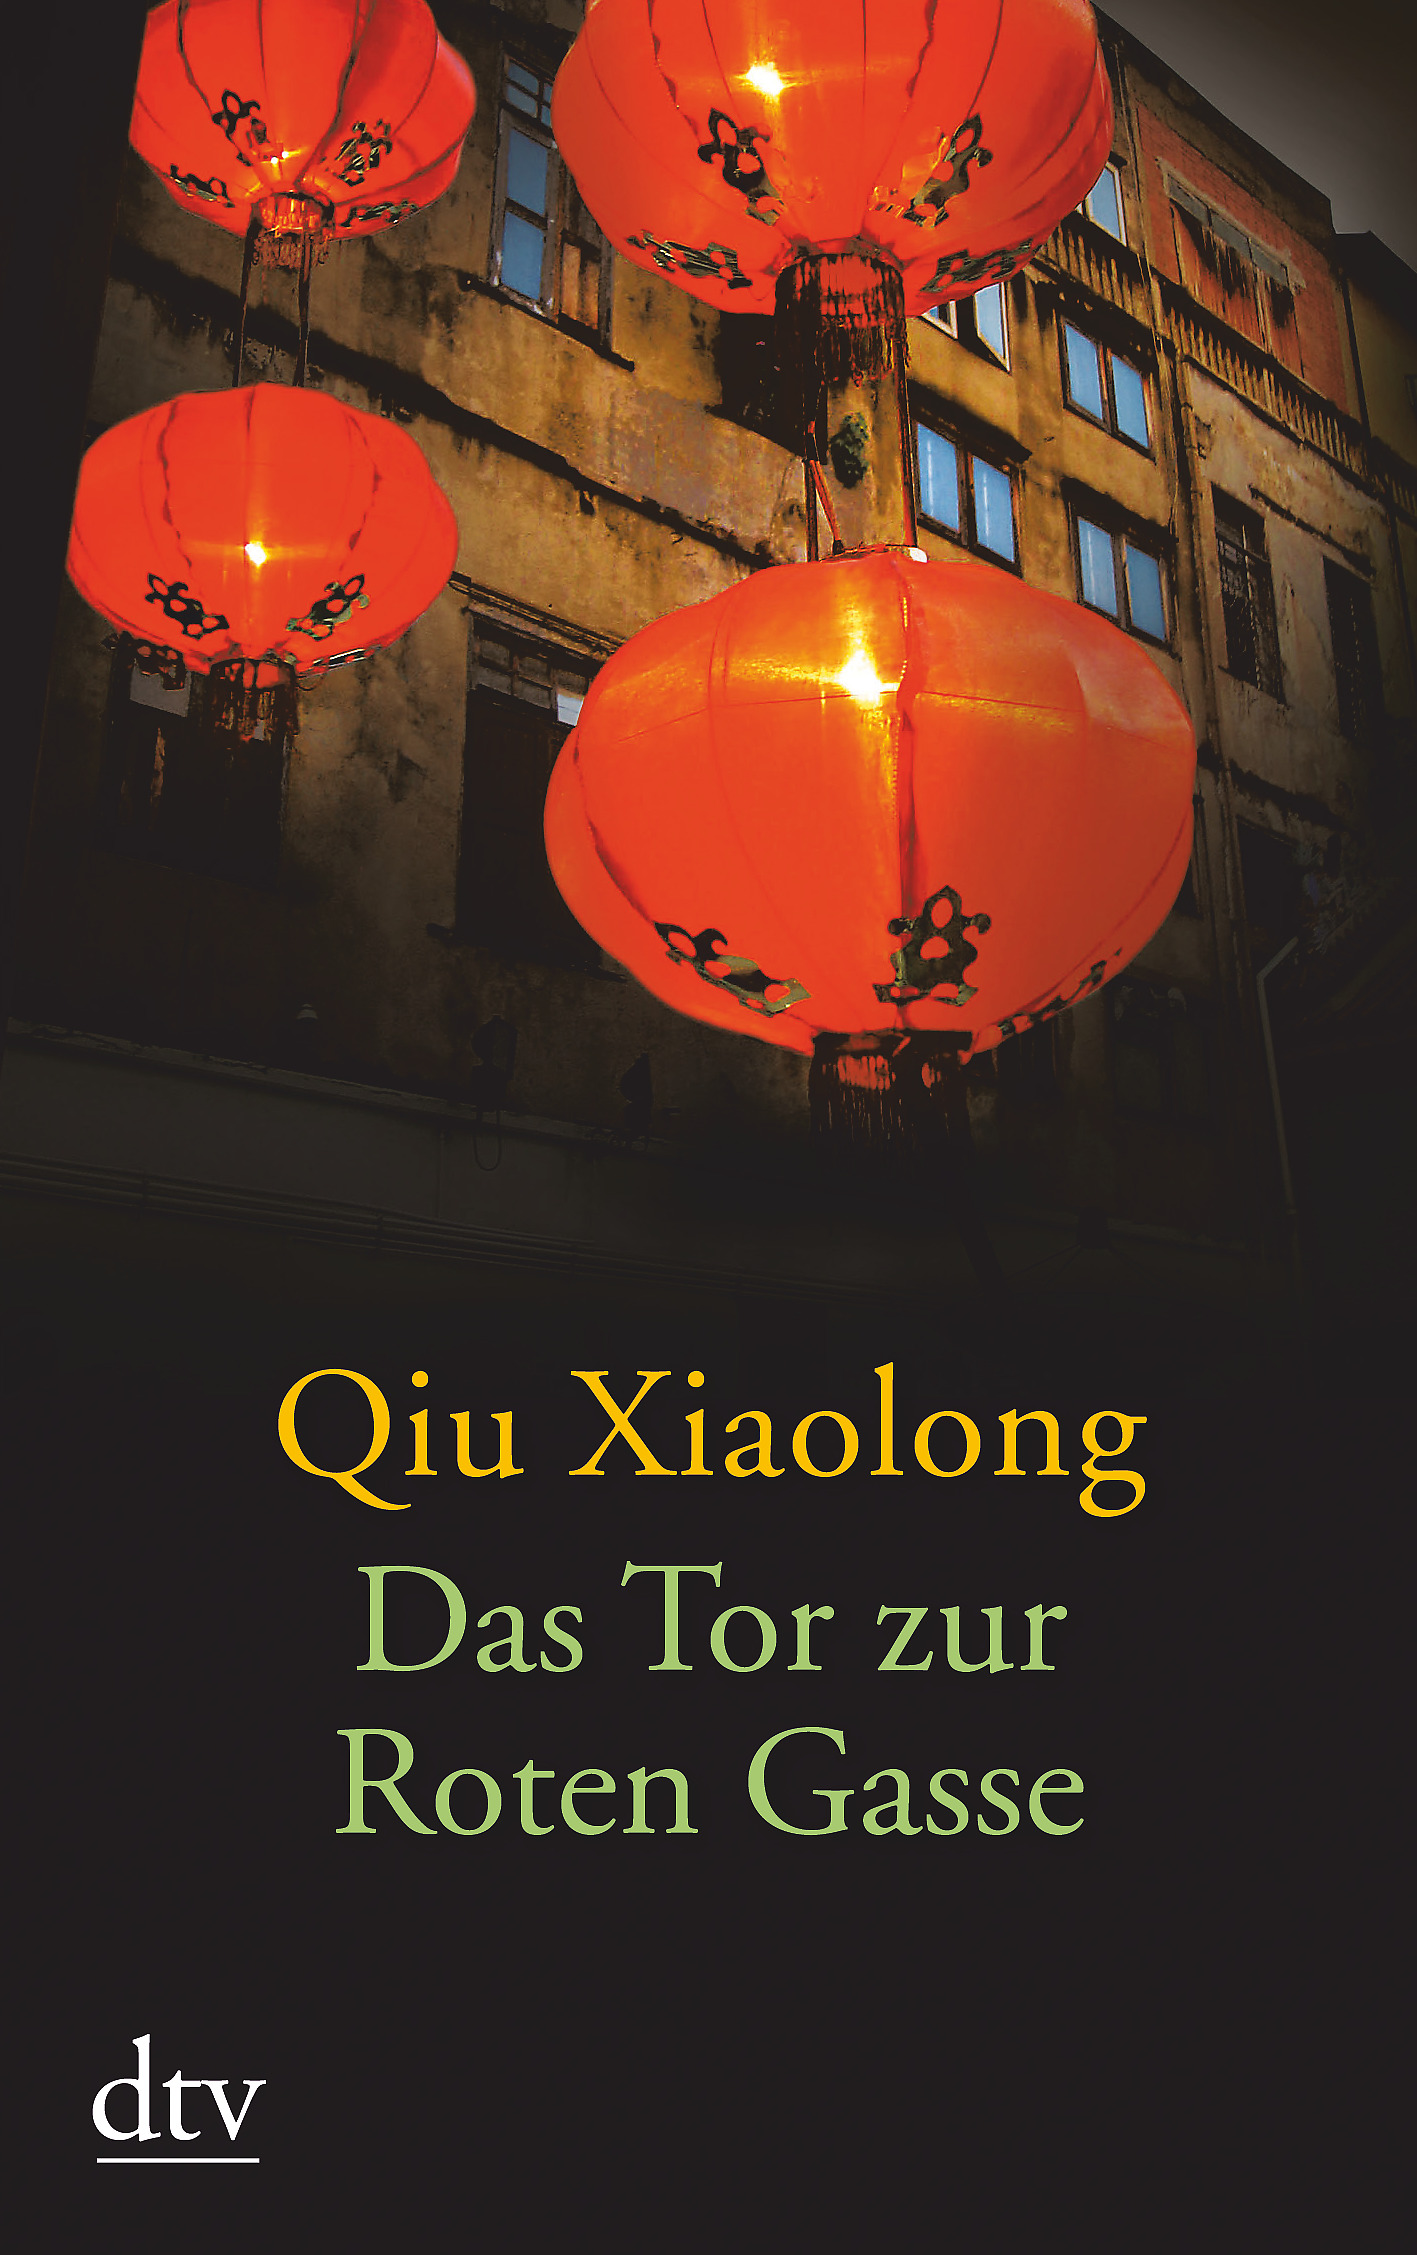 Xiaolong Qiu; Sonja Hauser; Susanne Hornfeck / Das Tor zur Roten Gasse - Bild 1 von 1